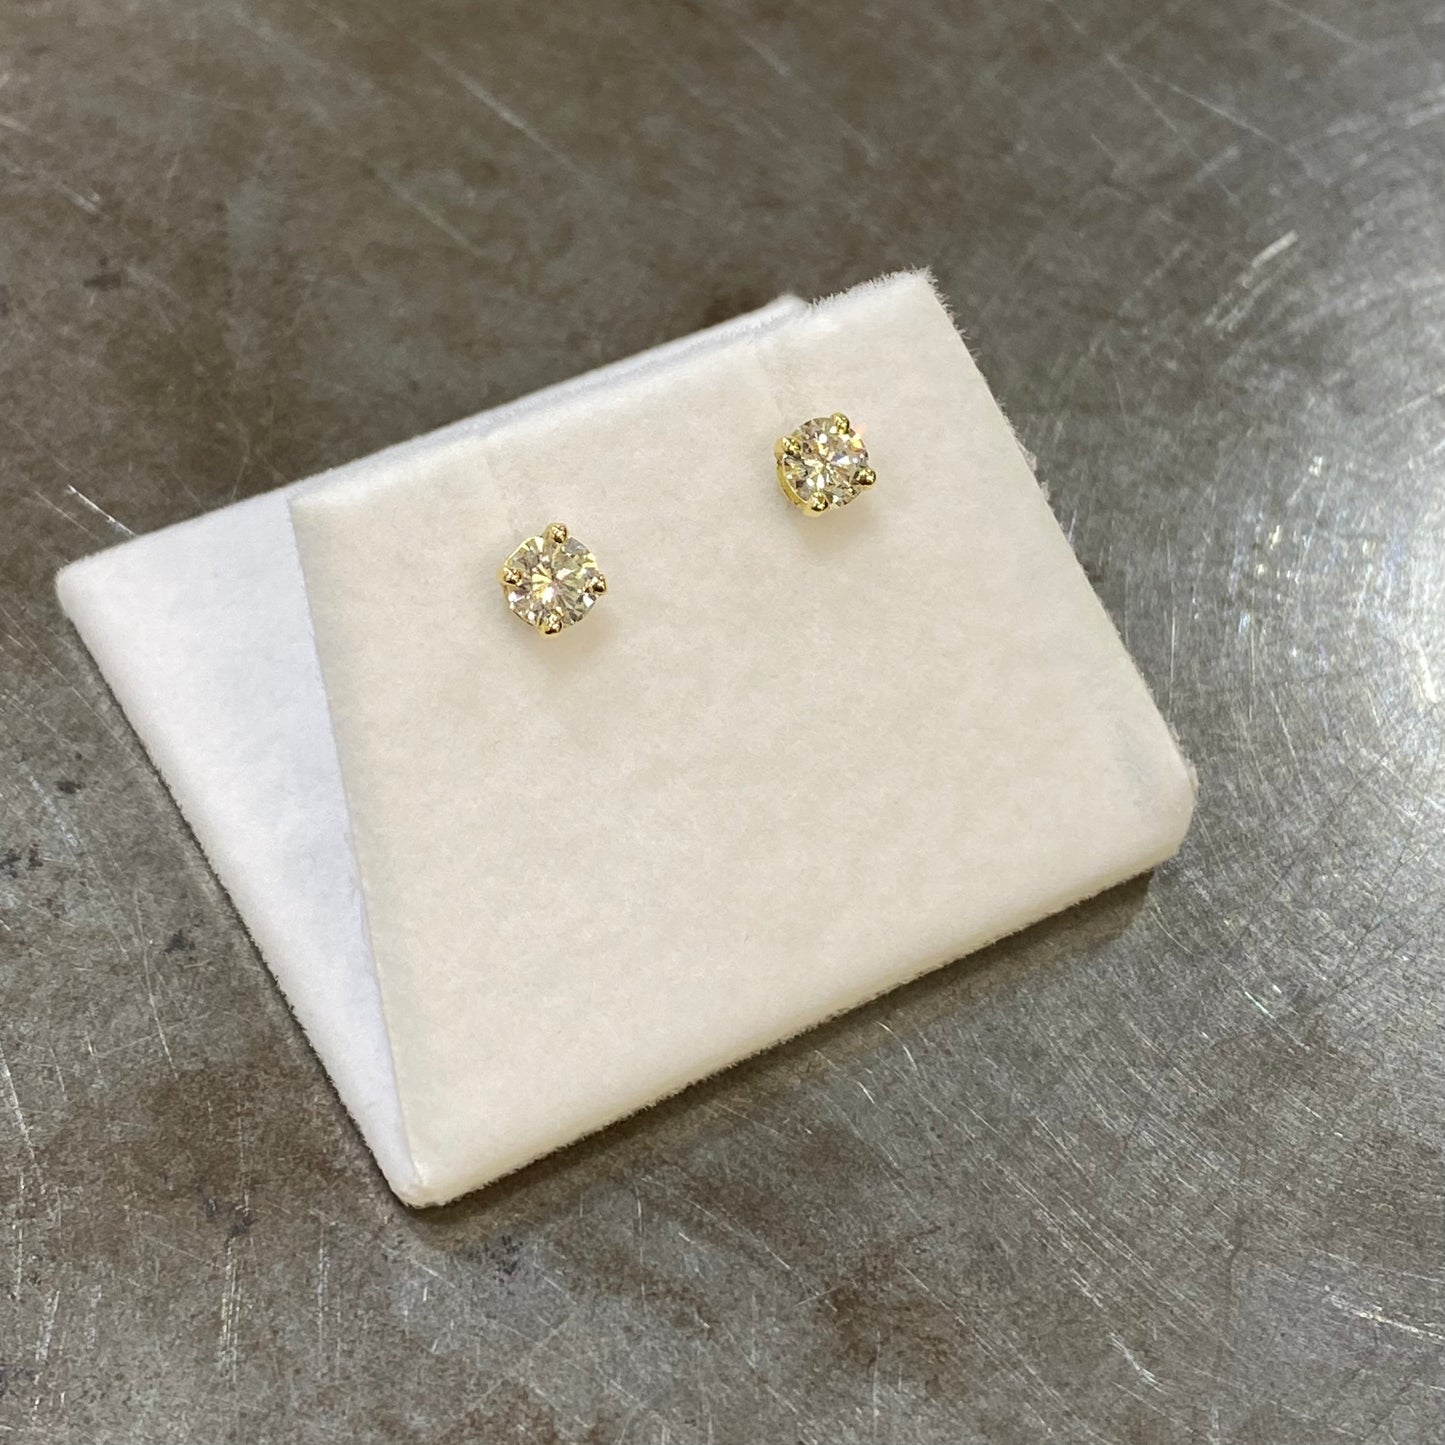 Boucles D'oreilles Puces Solitaire - Or Jaune 750 & Diamants